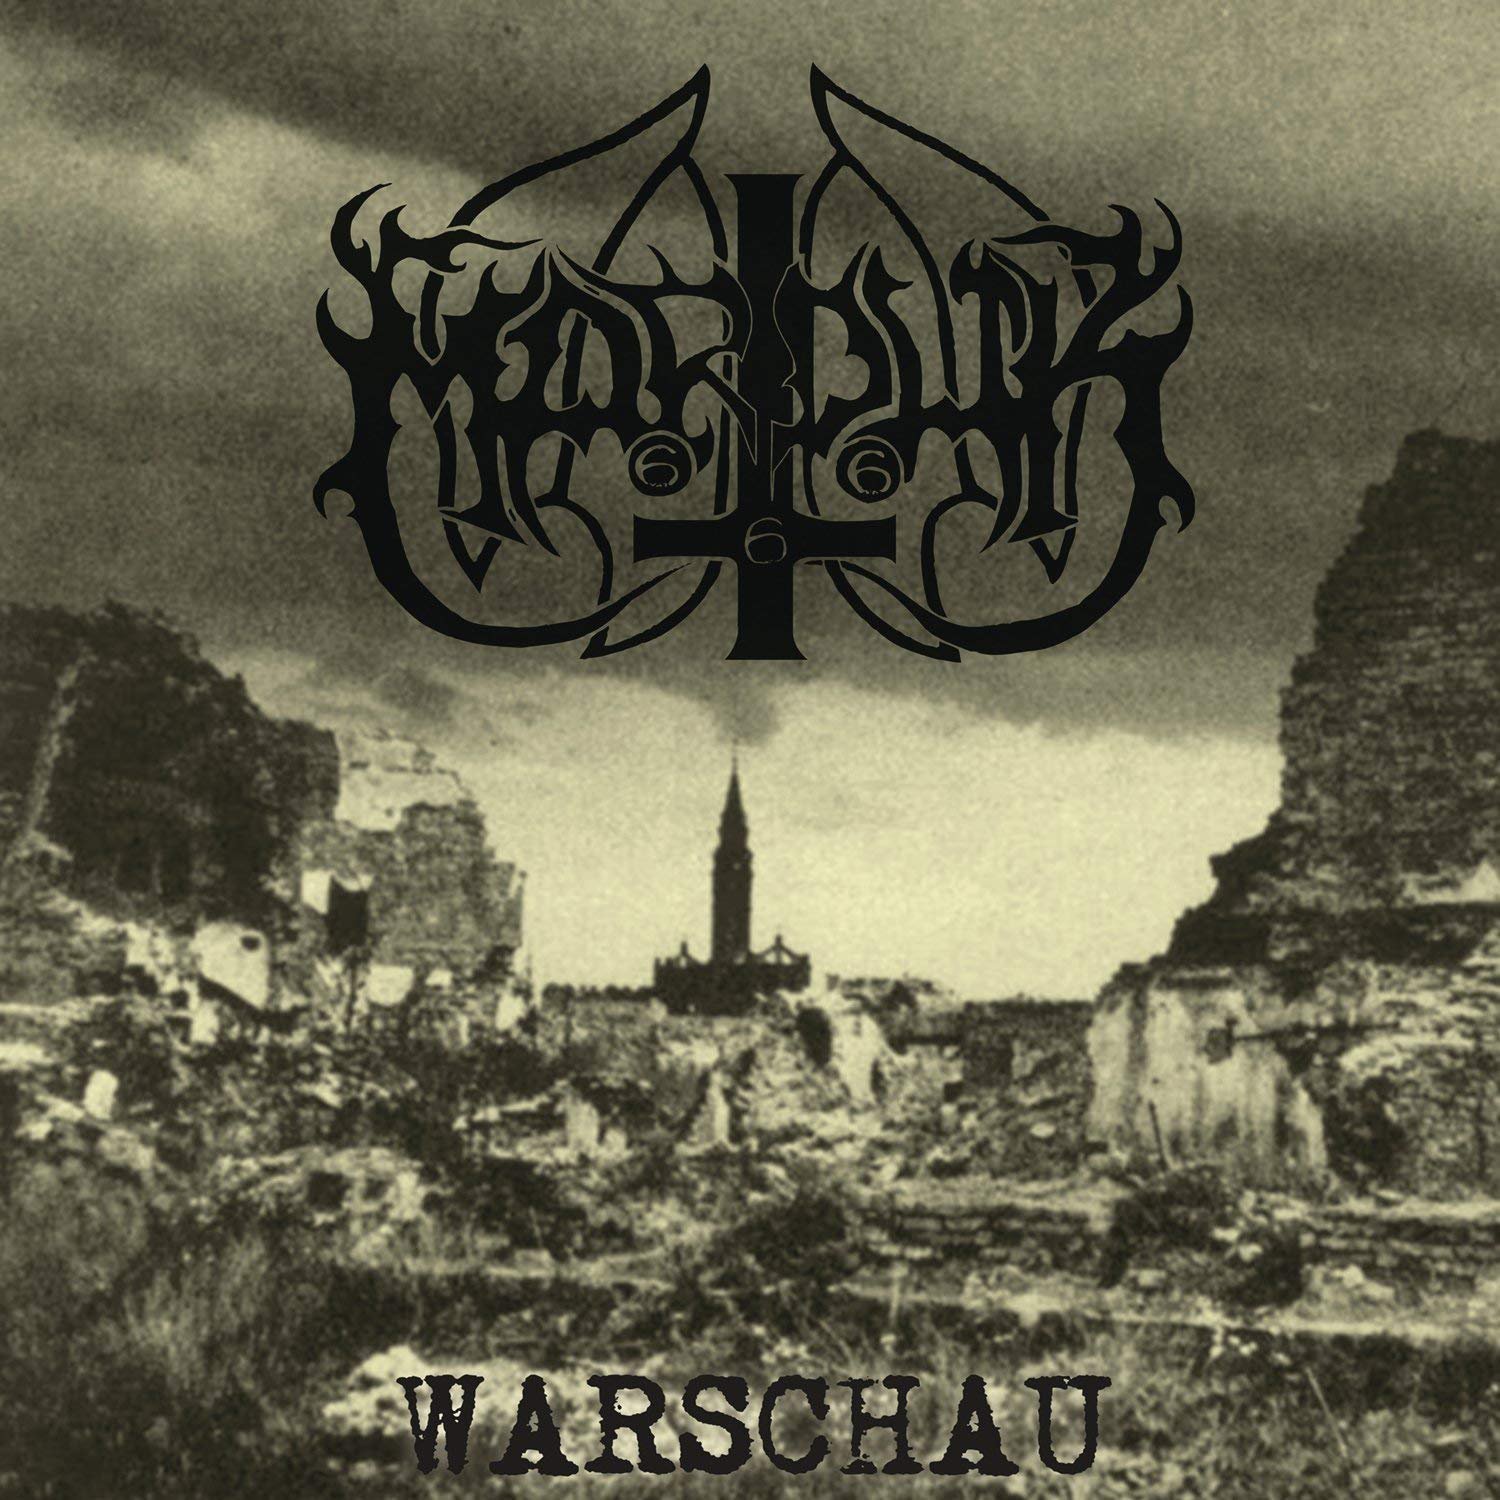 Vinyl Record Marduk - Warschau (Reissue) (Remastered) (Gatefold Sleeve) (2 LP)